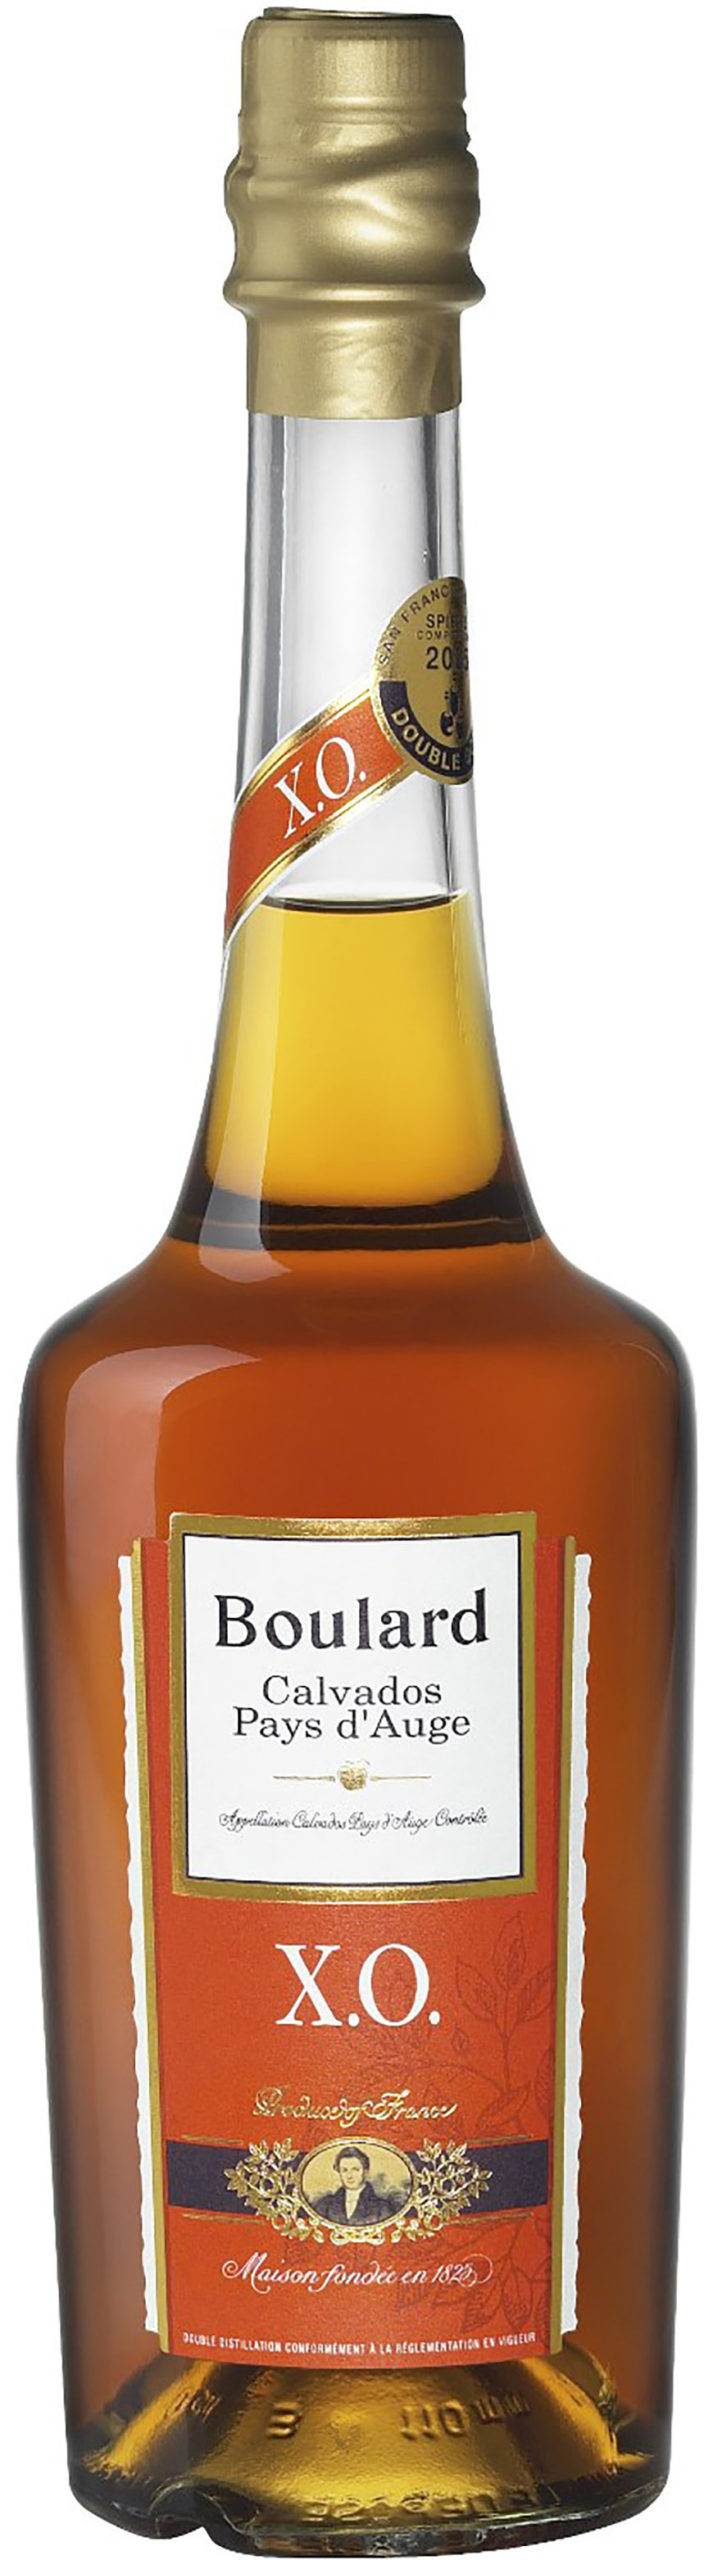 Boulard XO Calvados